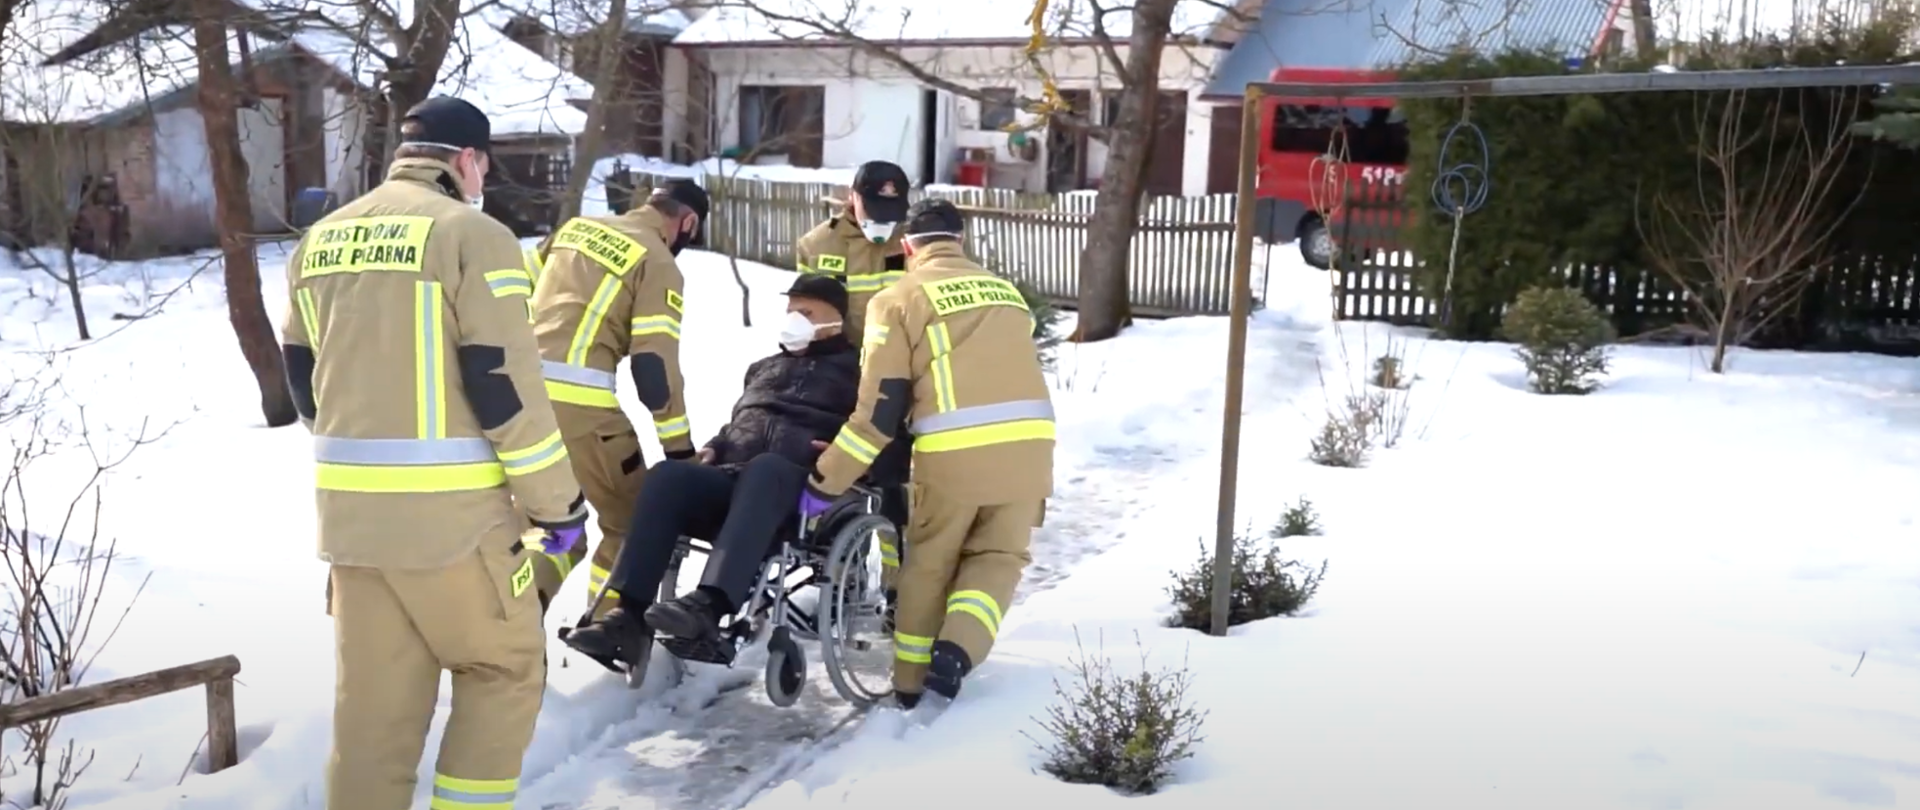 Strażacy pomagają osobie niepełnosprawnej transportując ją na wózku inwalidzkim przez zaśnieżoną ścieżkę do stojącego za bramką samochodu strażackiego